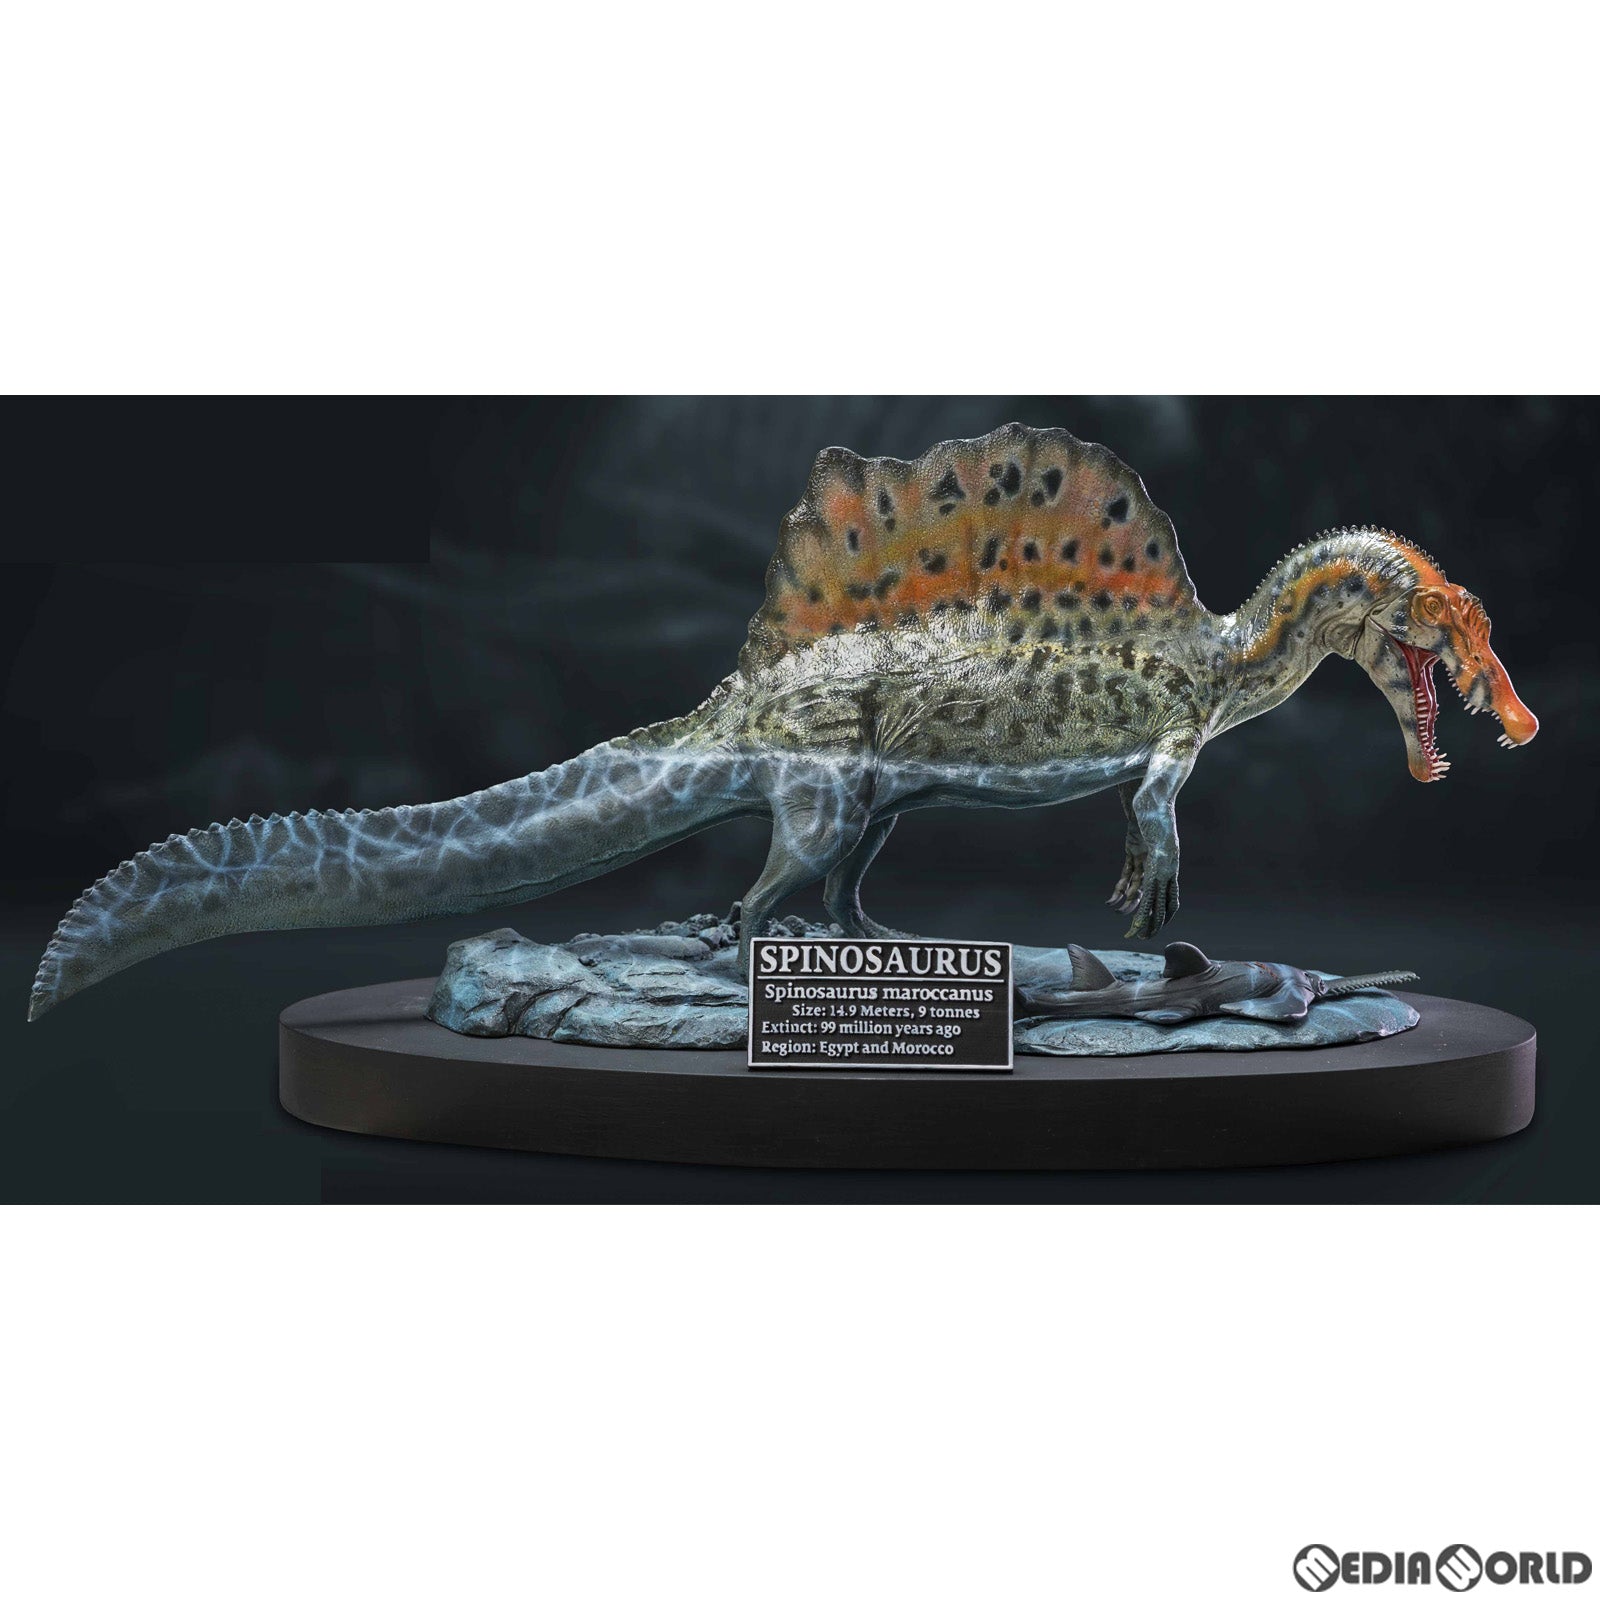 【新品即納】[FIG]ワンダーズ オブ ザ ワイルド スピノサウルス 1.0 ポリレジンスタチュー 完成品 フィギュア  スターエーストイズ/エクスプラス(20230203)